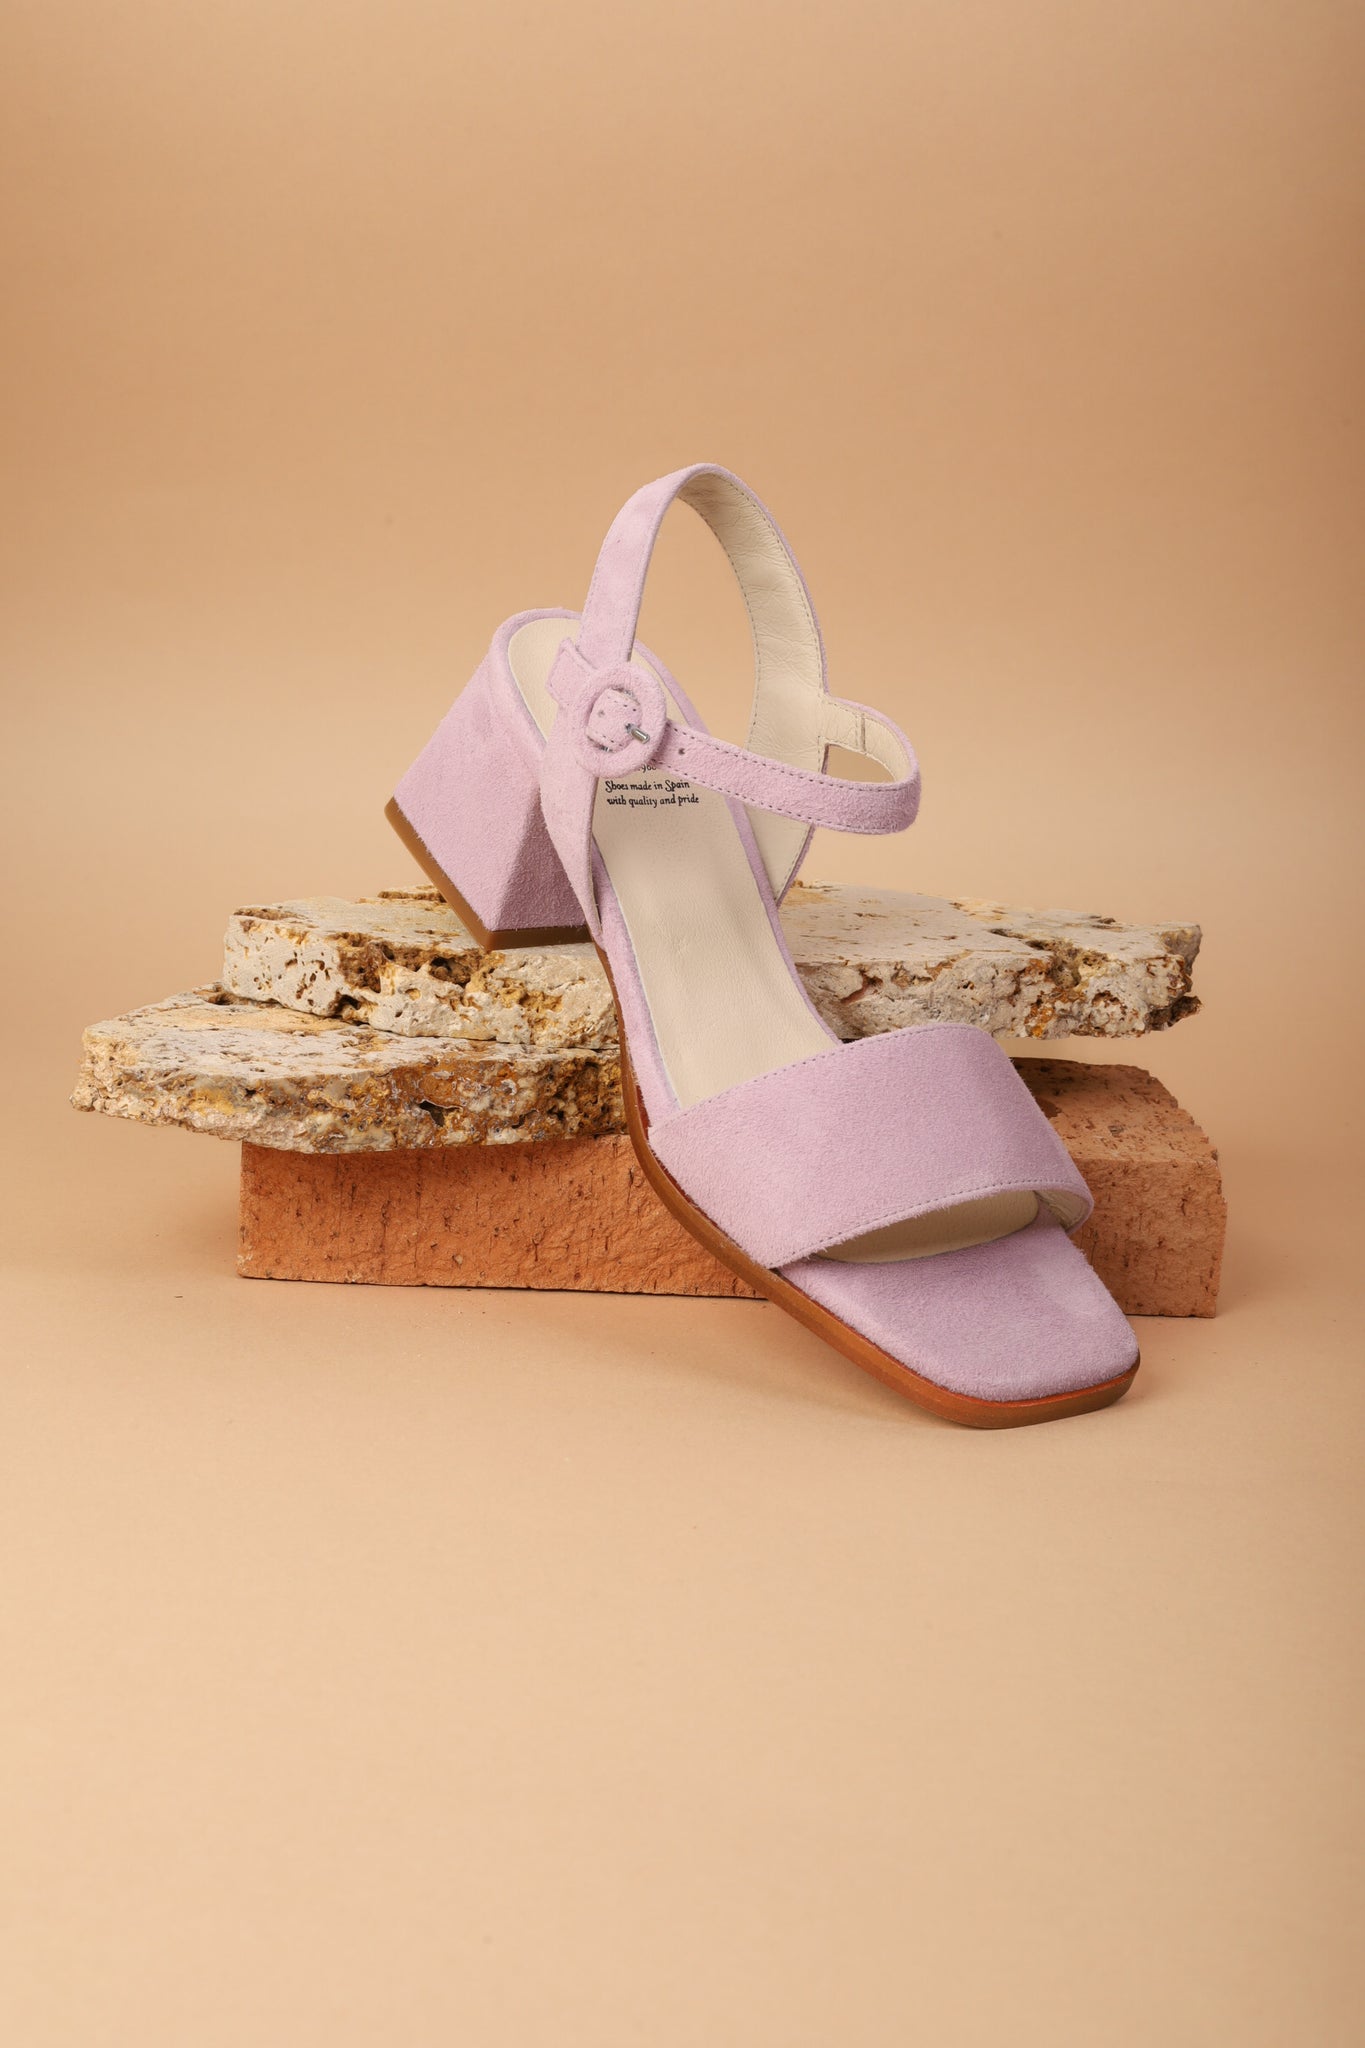 Mavis Lavender KMB shoes